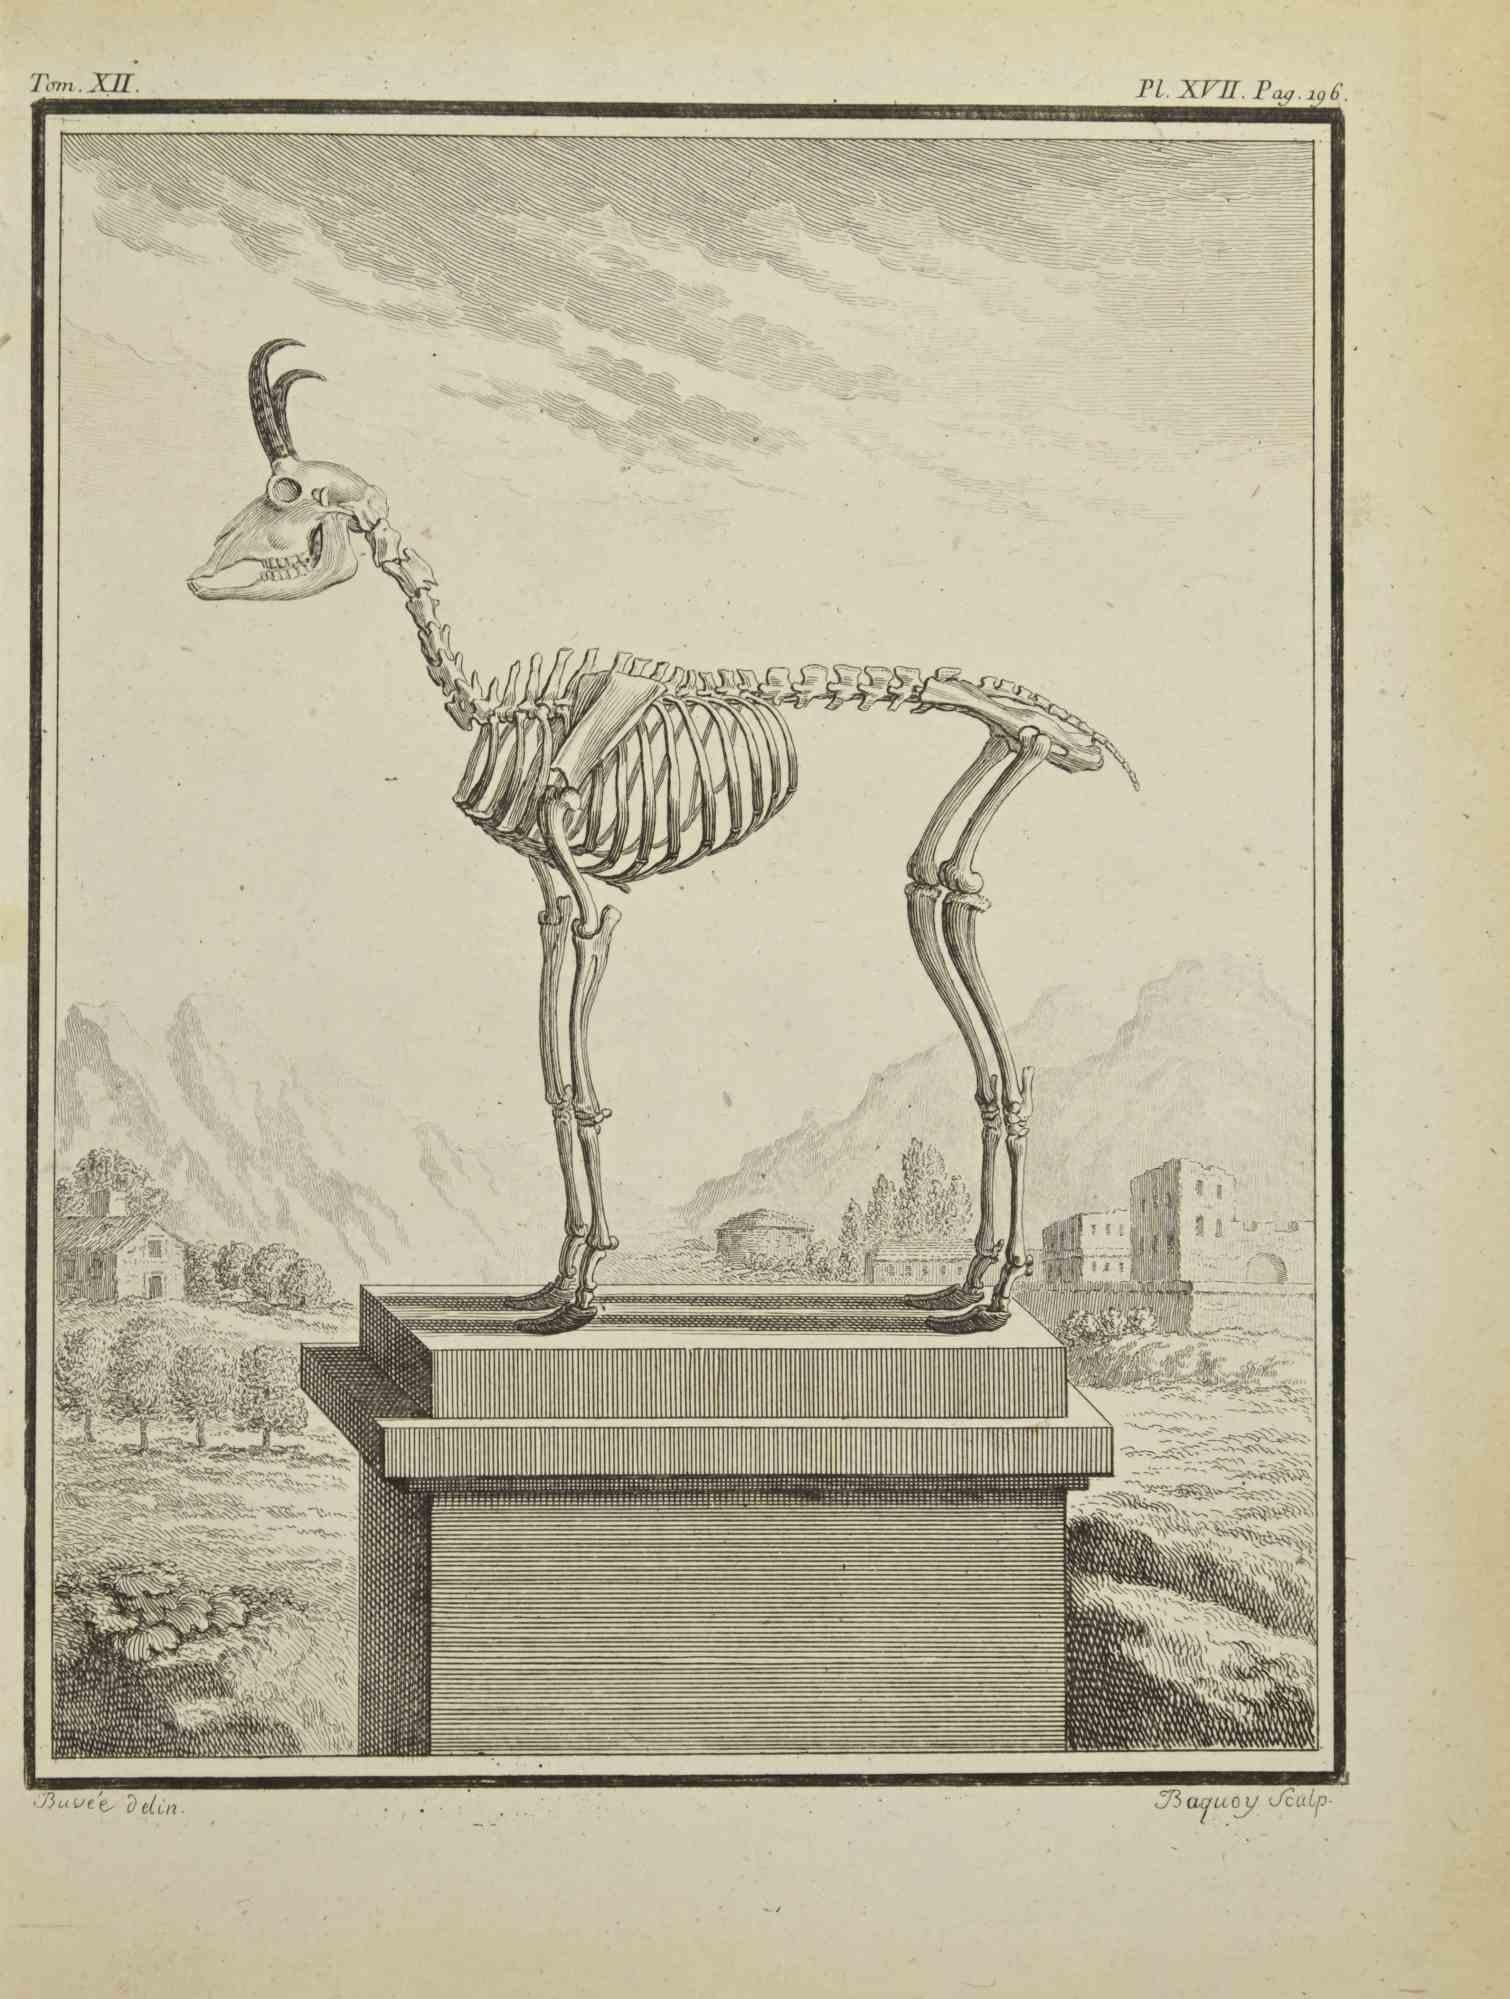 Das Skelett eines Tieres ist eine Radierung von Pierre Charles Baquoy aus dem Jahr 1771.

Es gehört zu der Reihe "Histoire naturelle, générale et particulière avec la description du Cabinet du Roi".

Pierre Charles Baquoy (27. Juli 1759 - 4. Februar